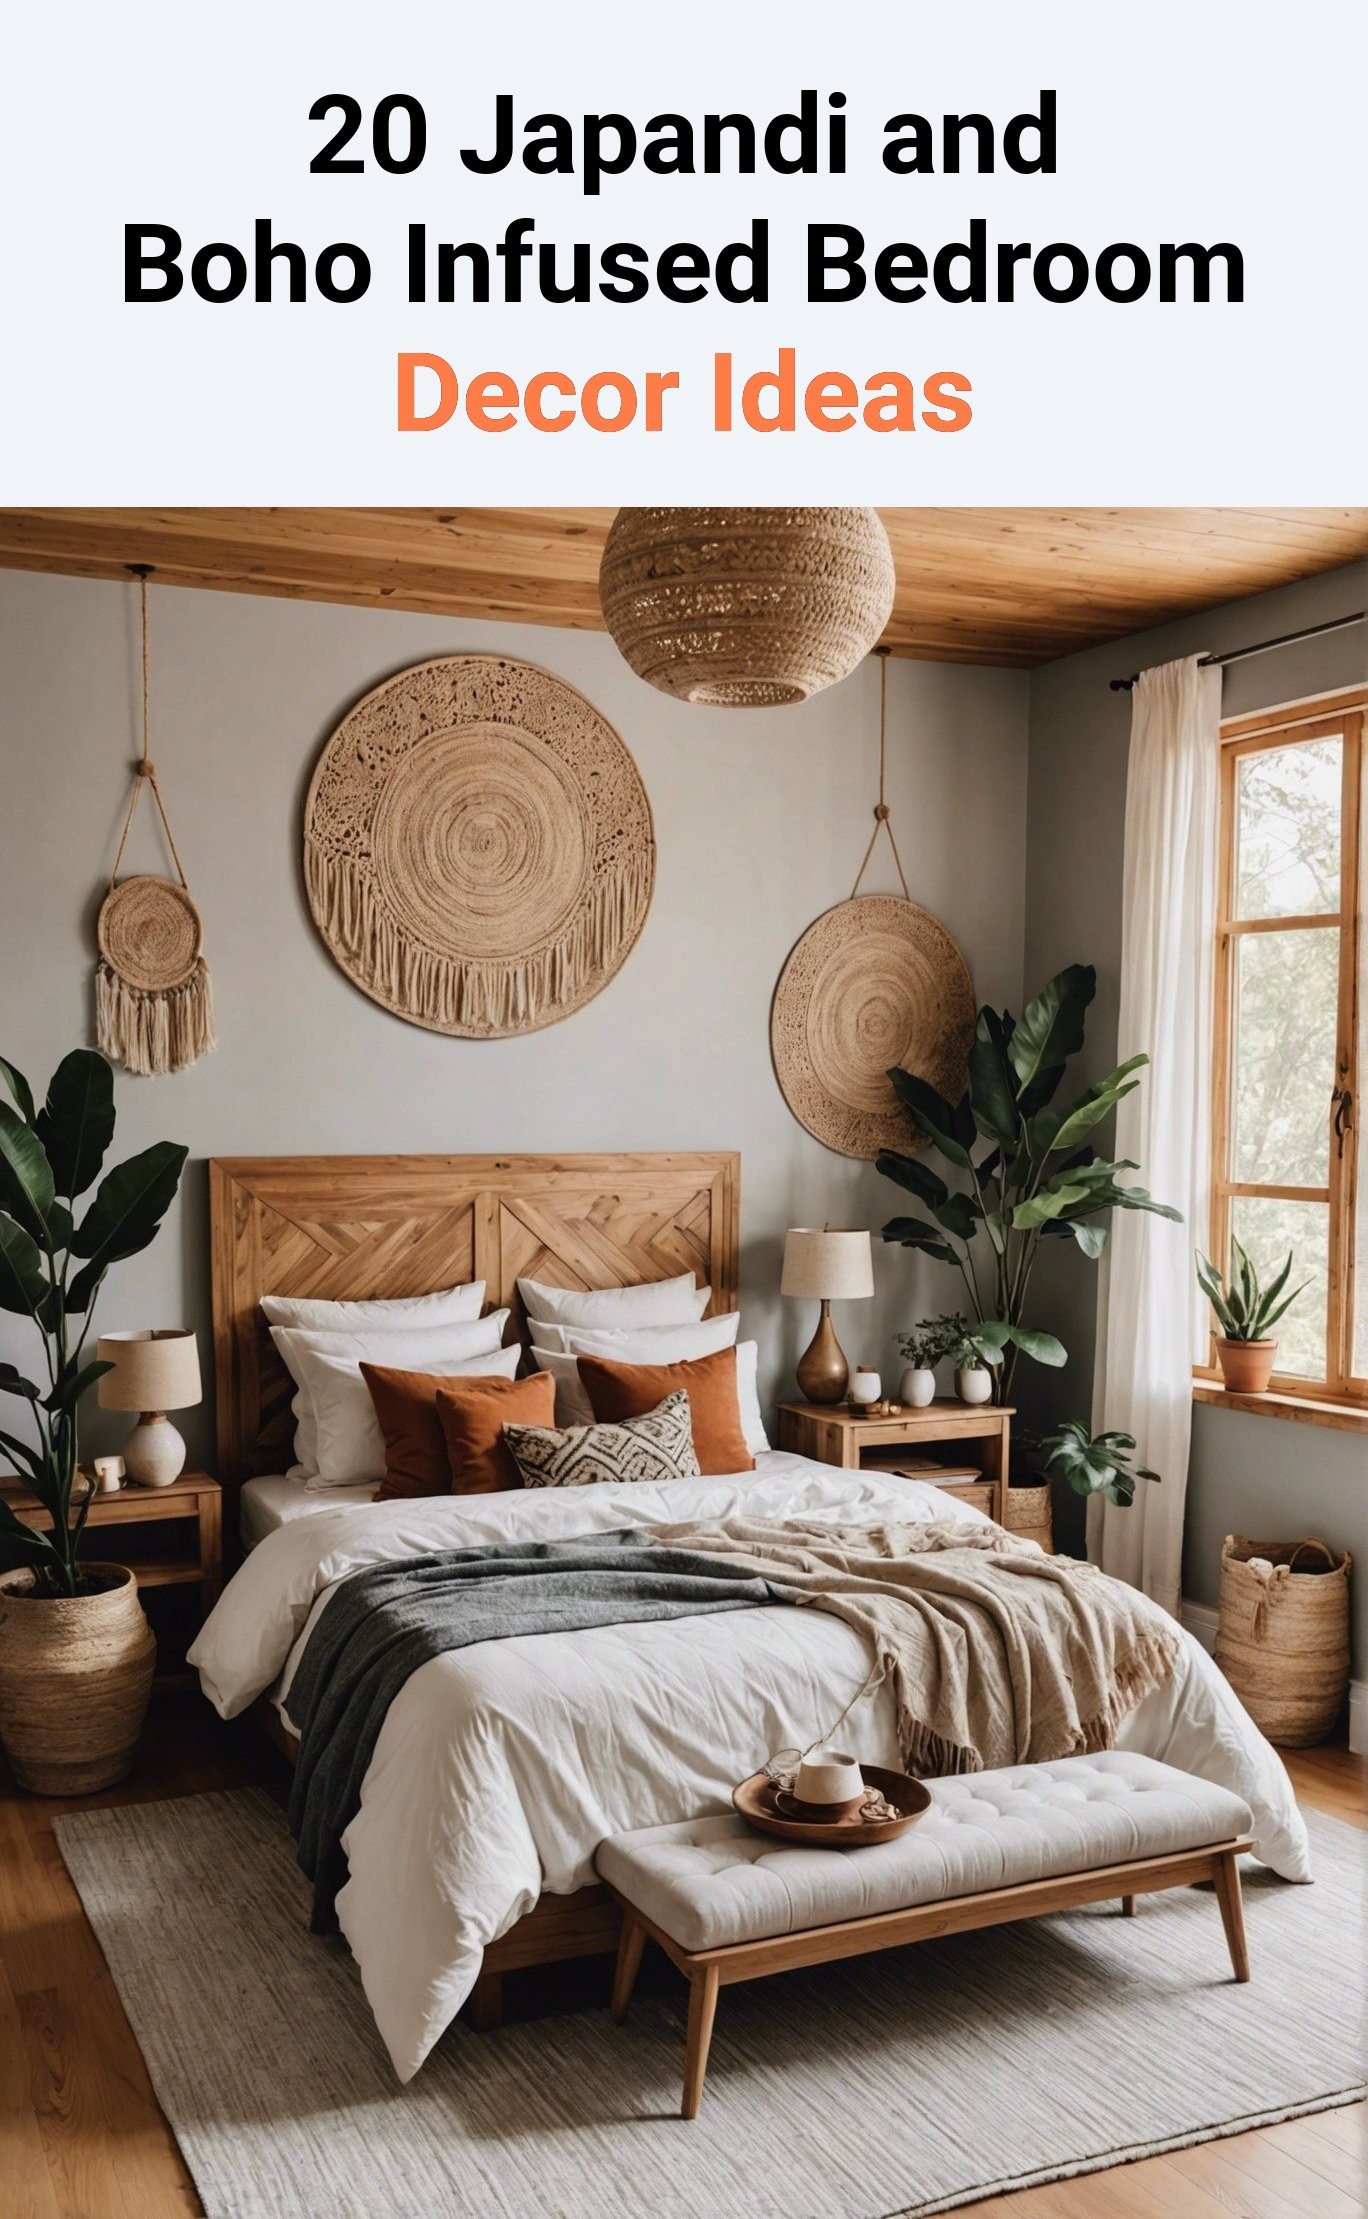 20 Japandi and Boho Infused Bedroom Decor Ideas